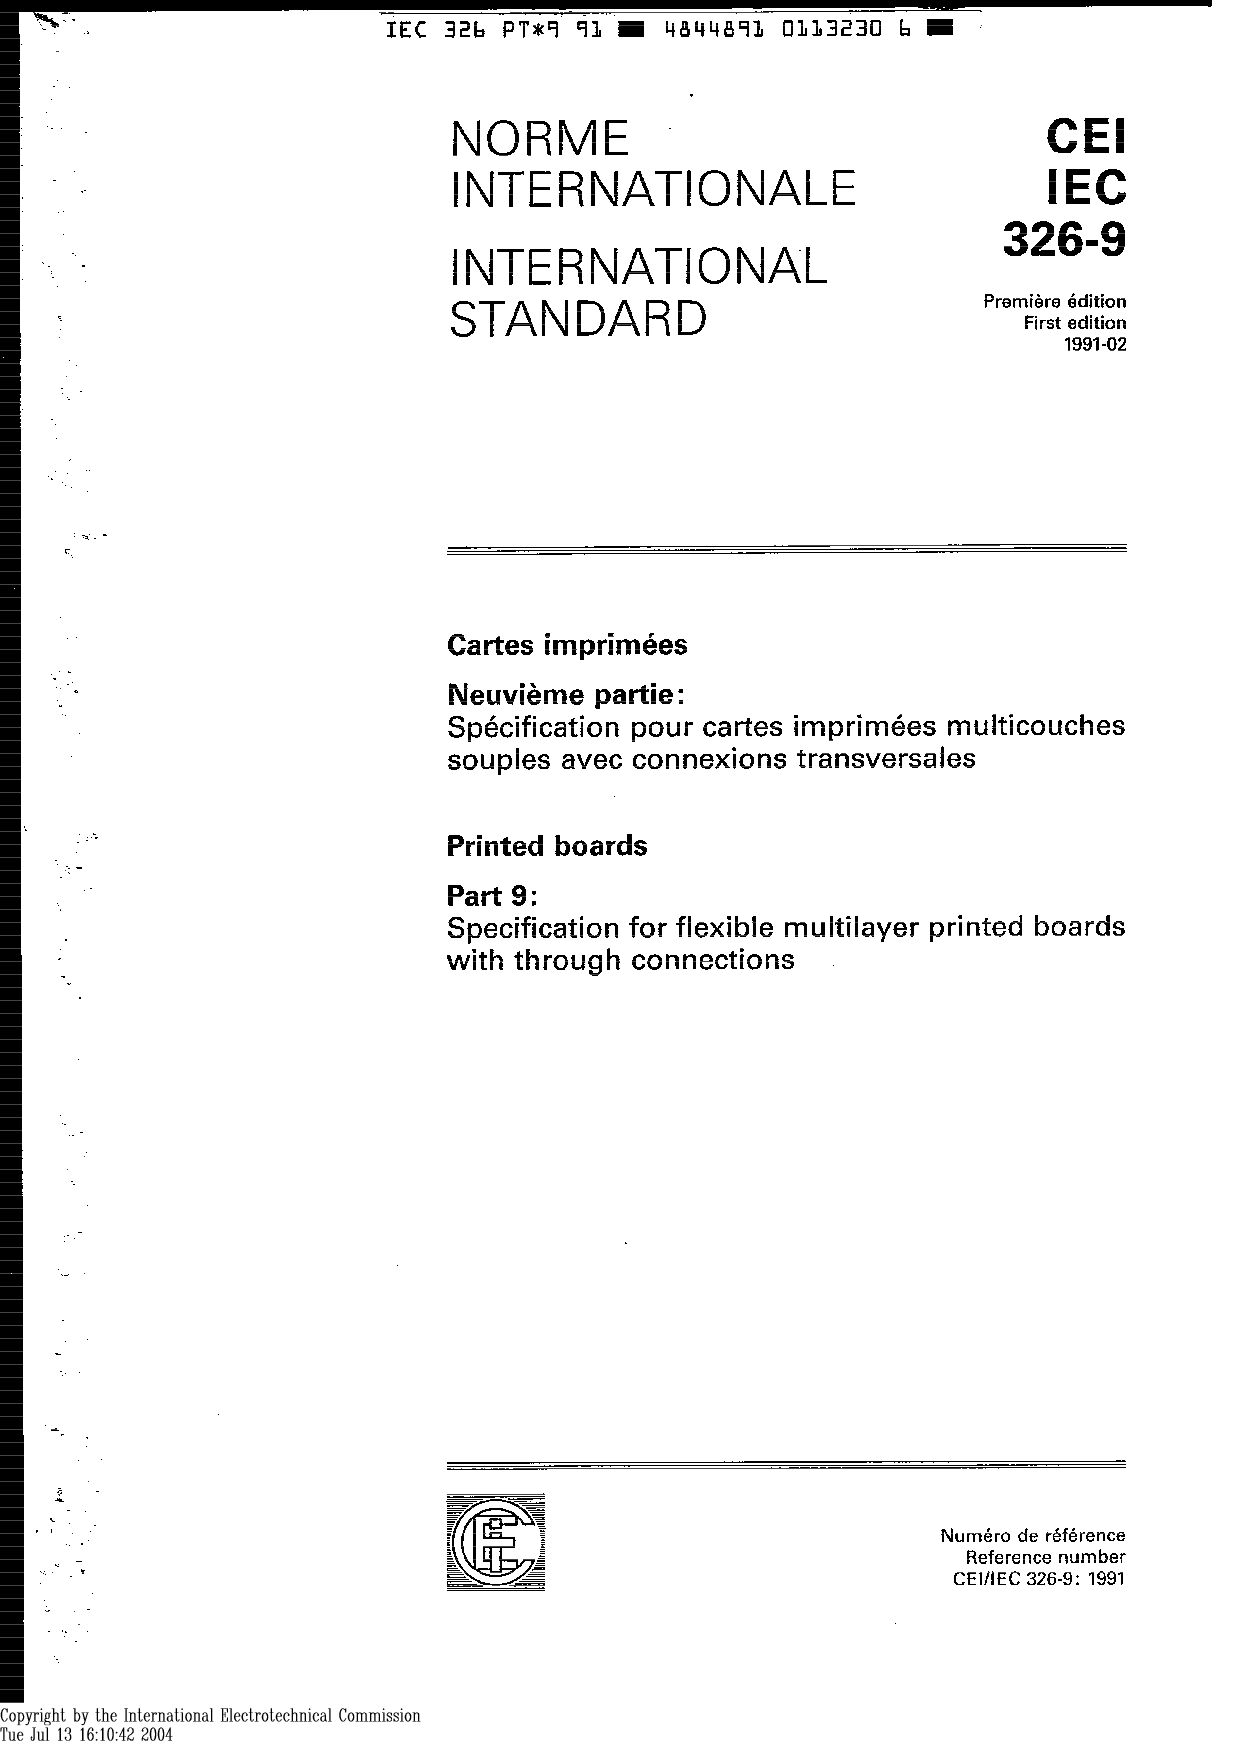 IEC 60326-9-1991